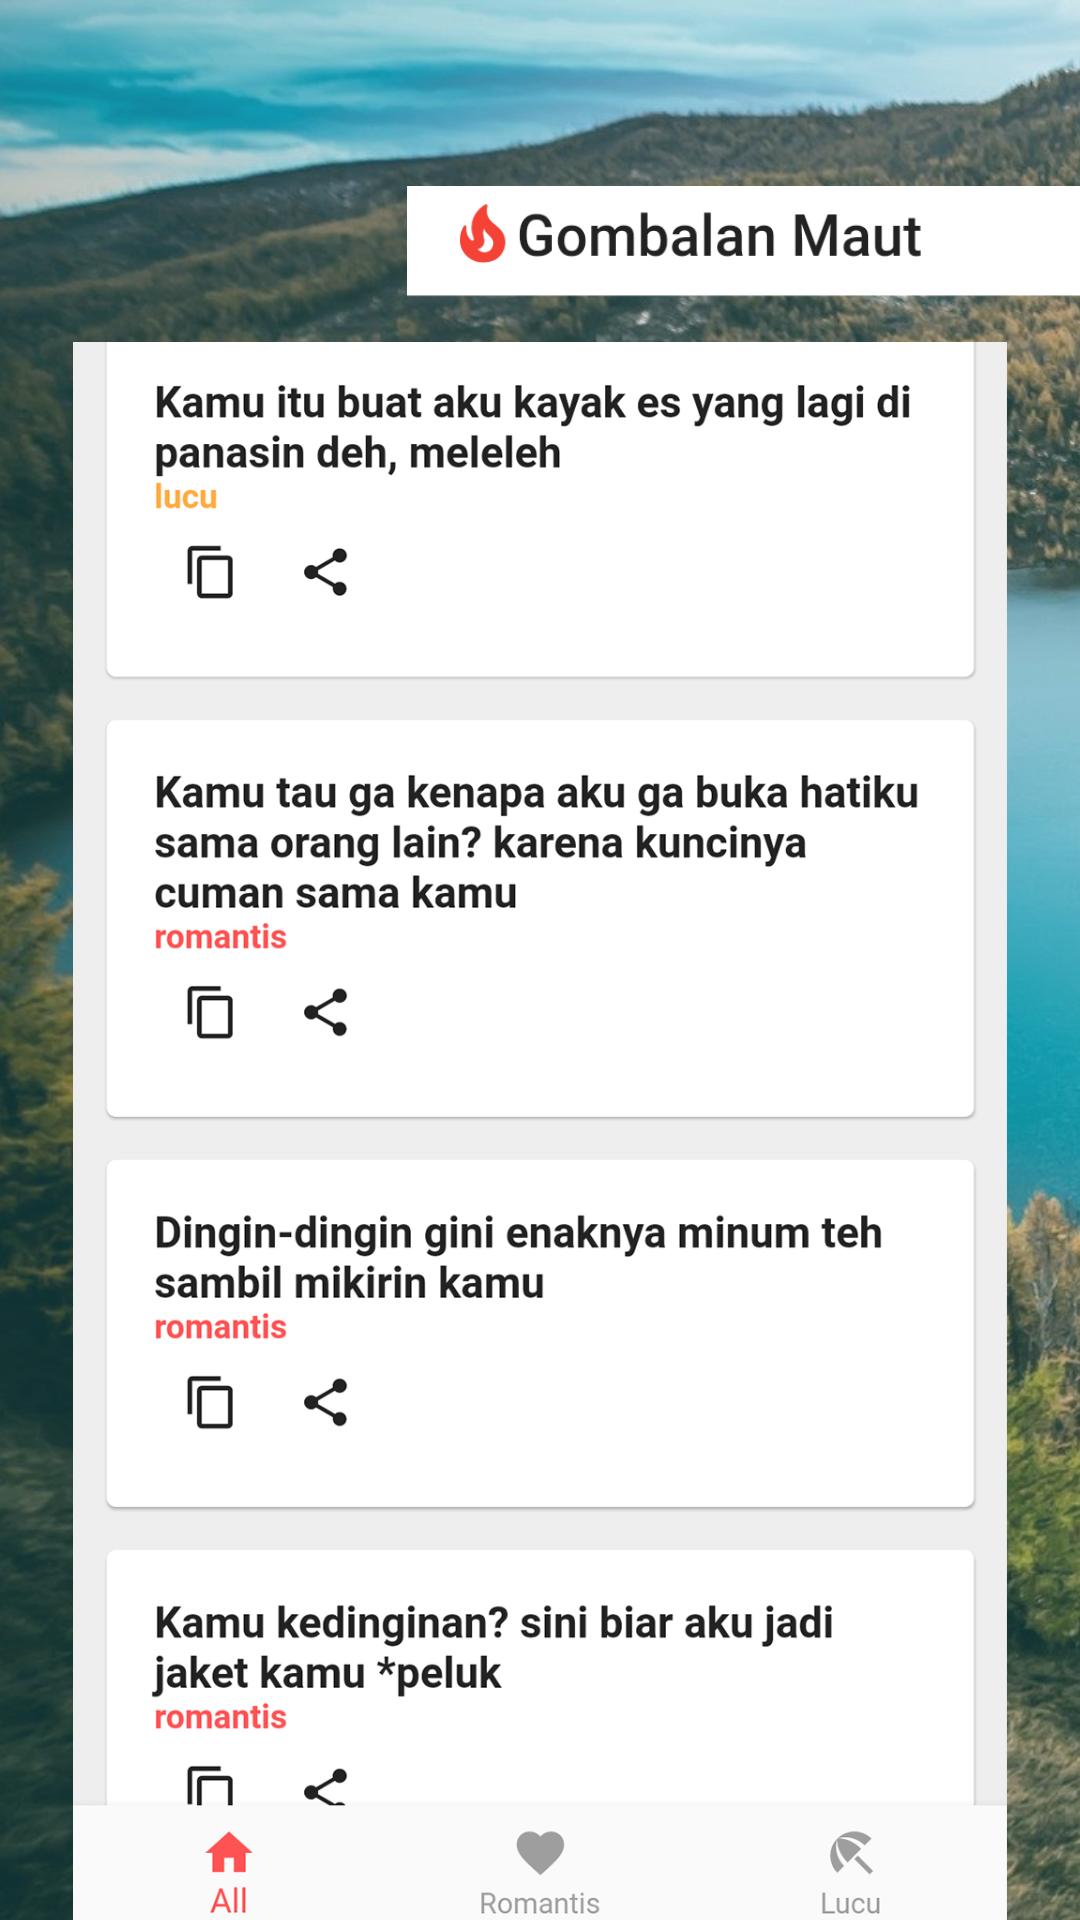 ดาวน์โหลด Gombalan Maut APK สำหรับ Android